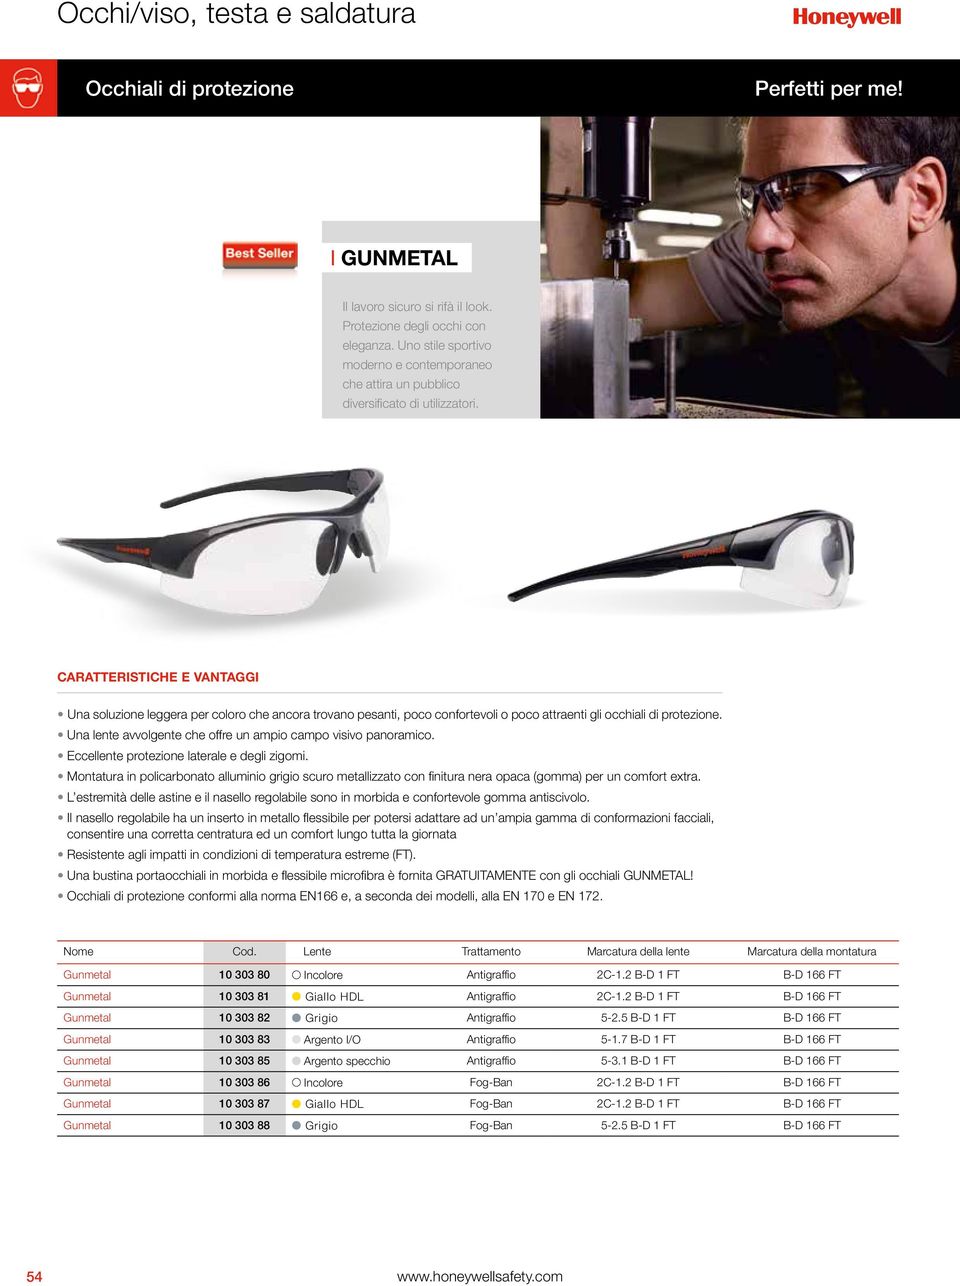 Una soluzione leggera per coloro che ancora trovano pesanti, poco confortevoli o poco attraenti gli occhiali di protezione. Una lente avvolgente che offre un ampio campo visivo panoramico.